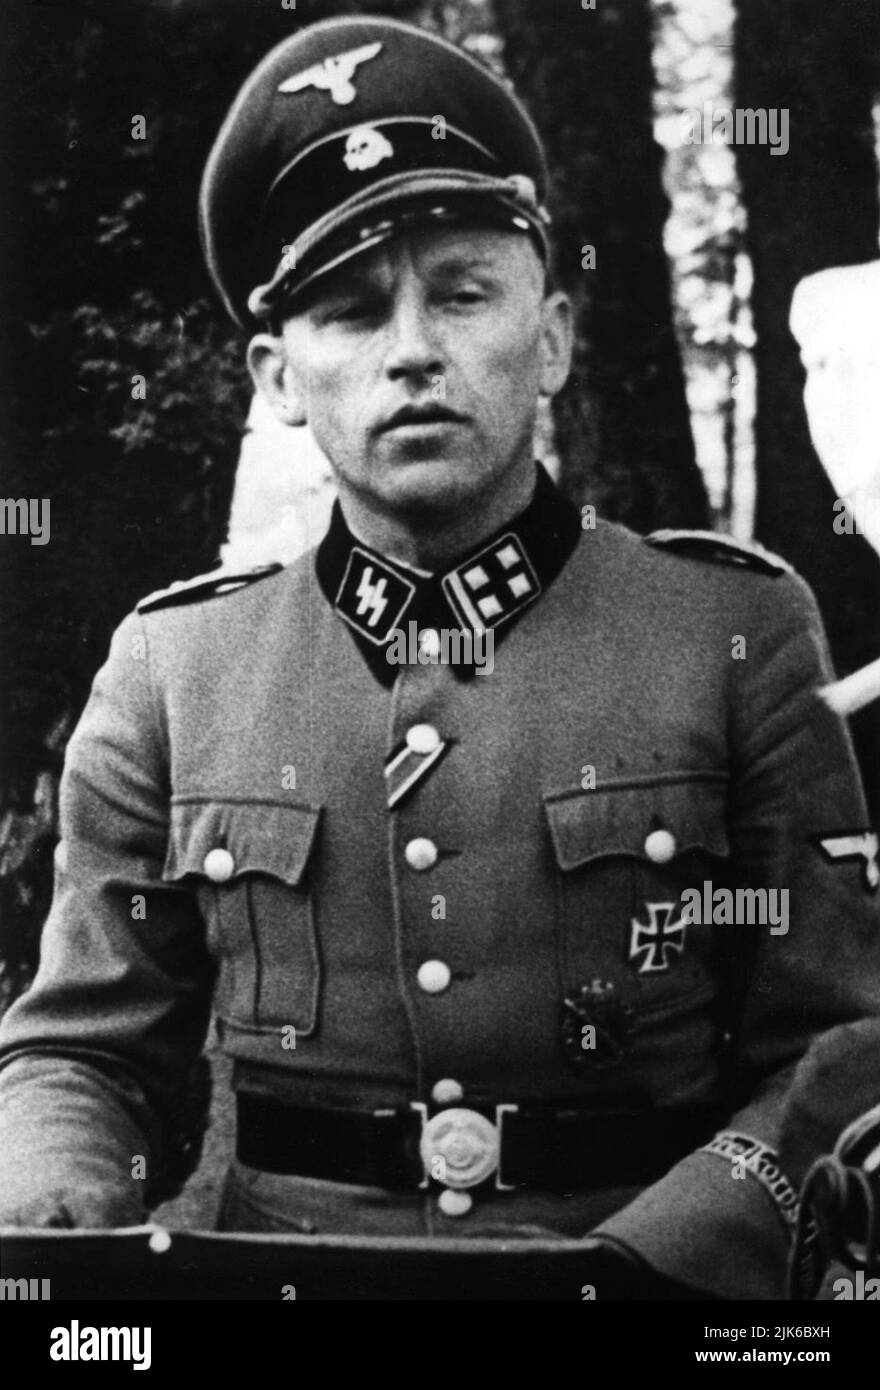 Die Nazi-deutschen Elitetruppen die Waffen-SS hatte viele Abteilungen ausländischer Freiwilliger, die an den nationalsozialismus glaubten. . Knud Børge Martinsen, der Kommandant des dänischen SS-Freikorps Dänemark war Stockfoto